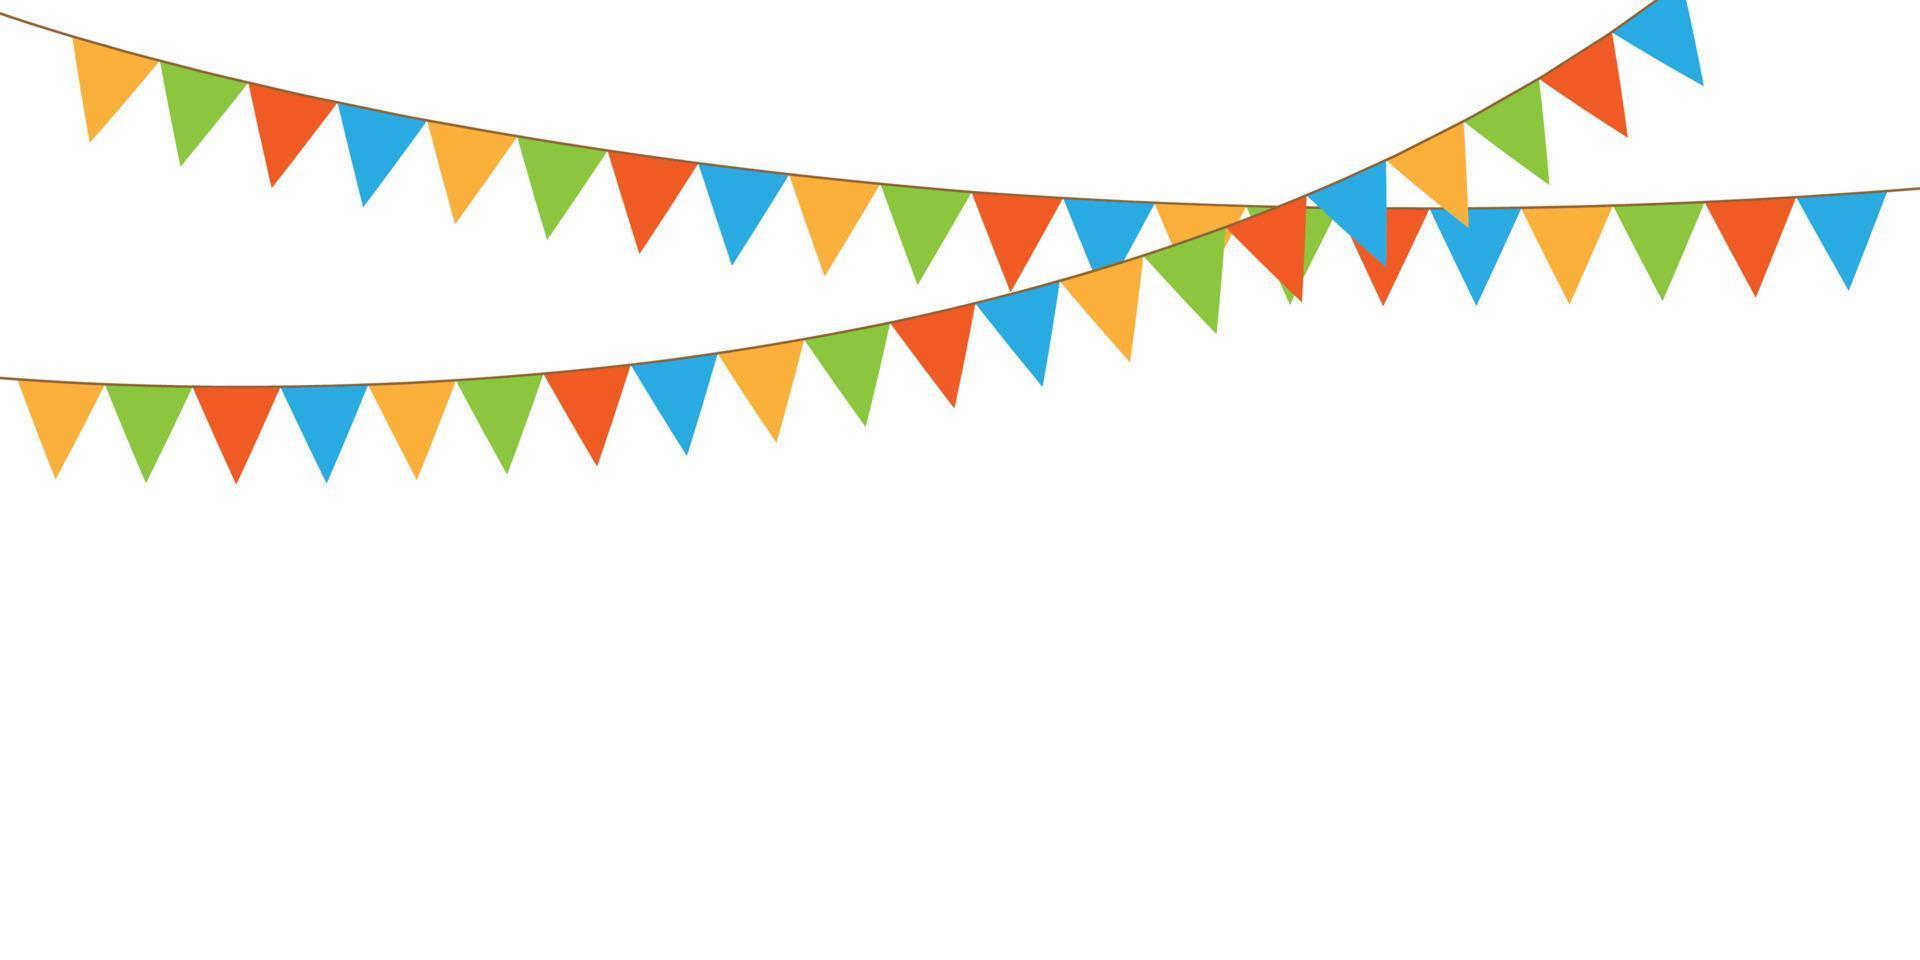 färgrik fest vimplar kedja, krans med flaggor, Semester bakgrund med hängande färgrik flaggor, vektor illustration